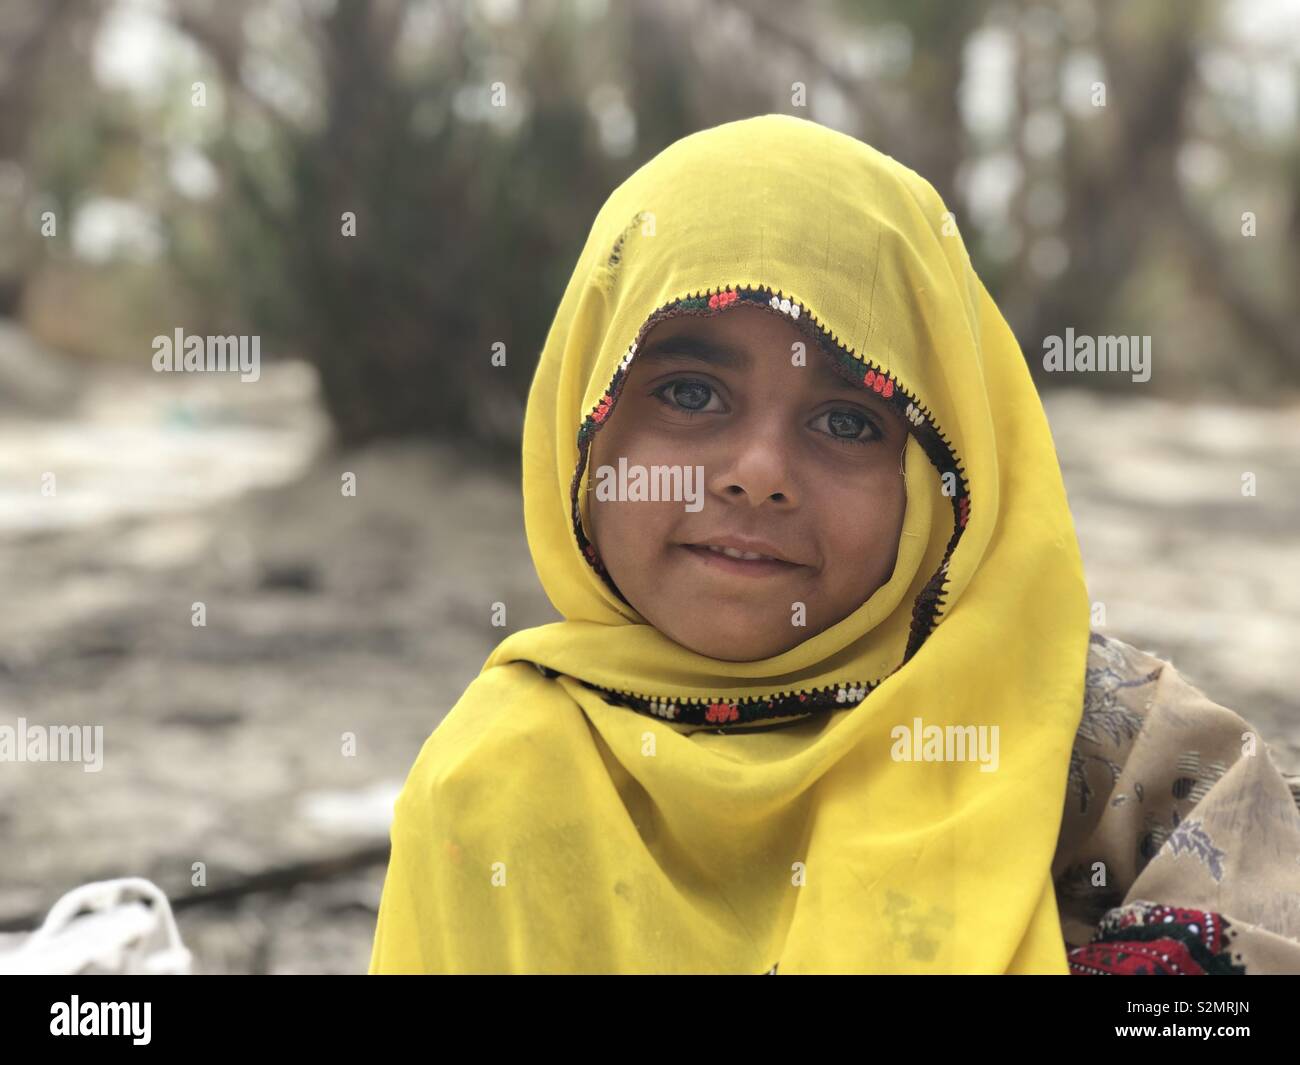 Eine Probe Dorf Baby Mädchen so schön mit dem lächelnden Gesicht. Stockfoto